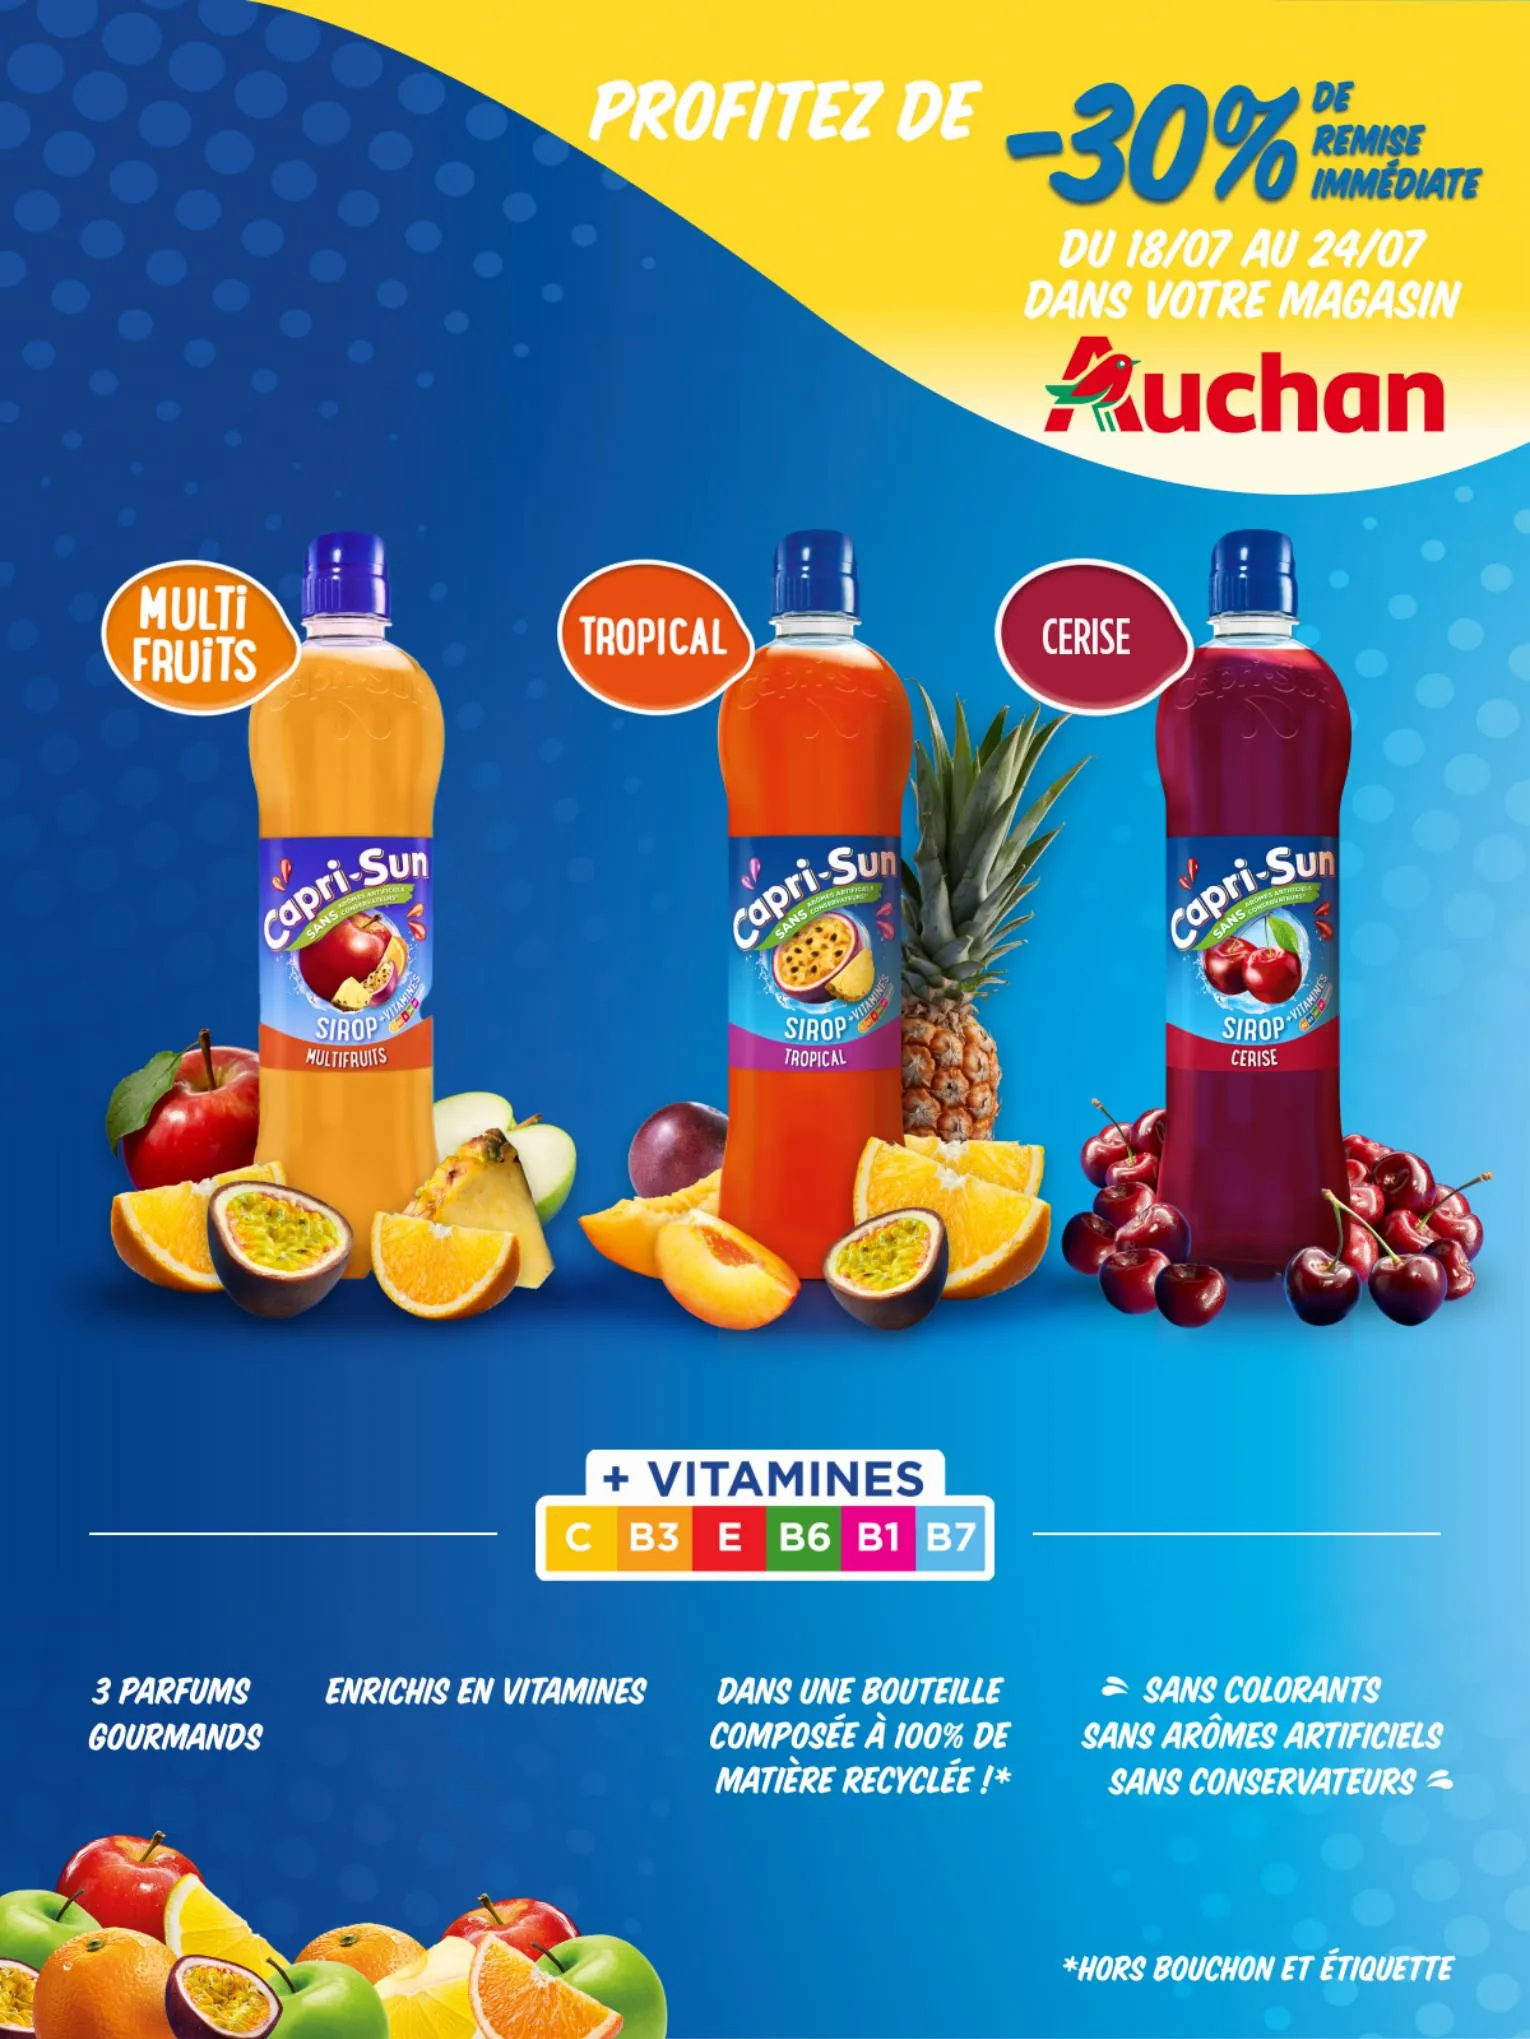 Catalogue Capri-Sun :-30% de remise immédiate dans votre magasin Auchan, page 00002